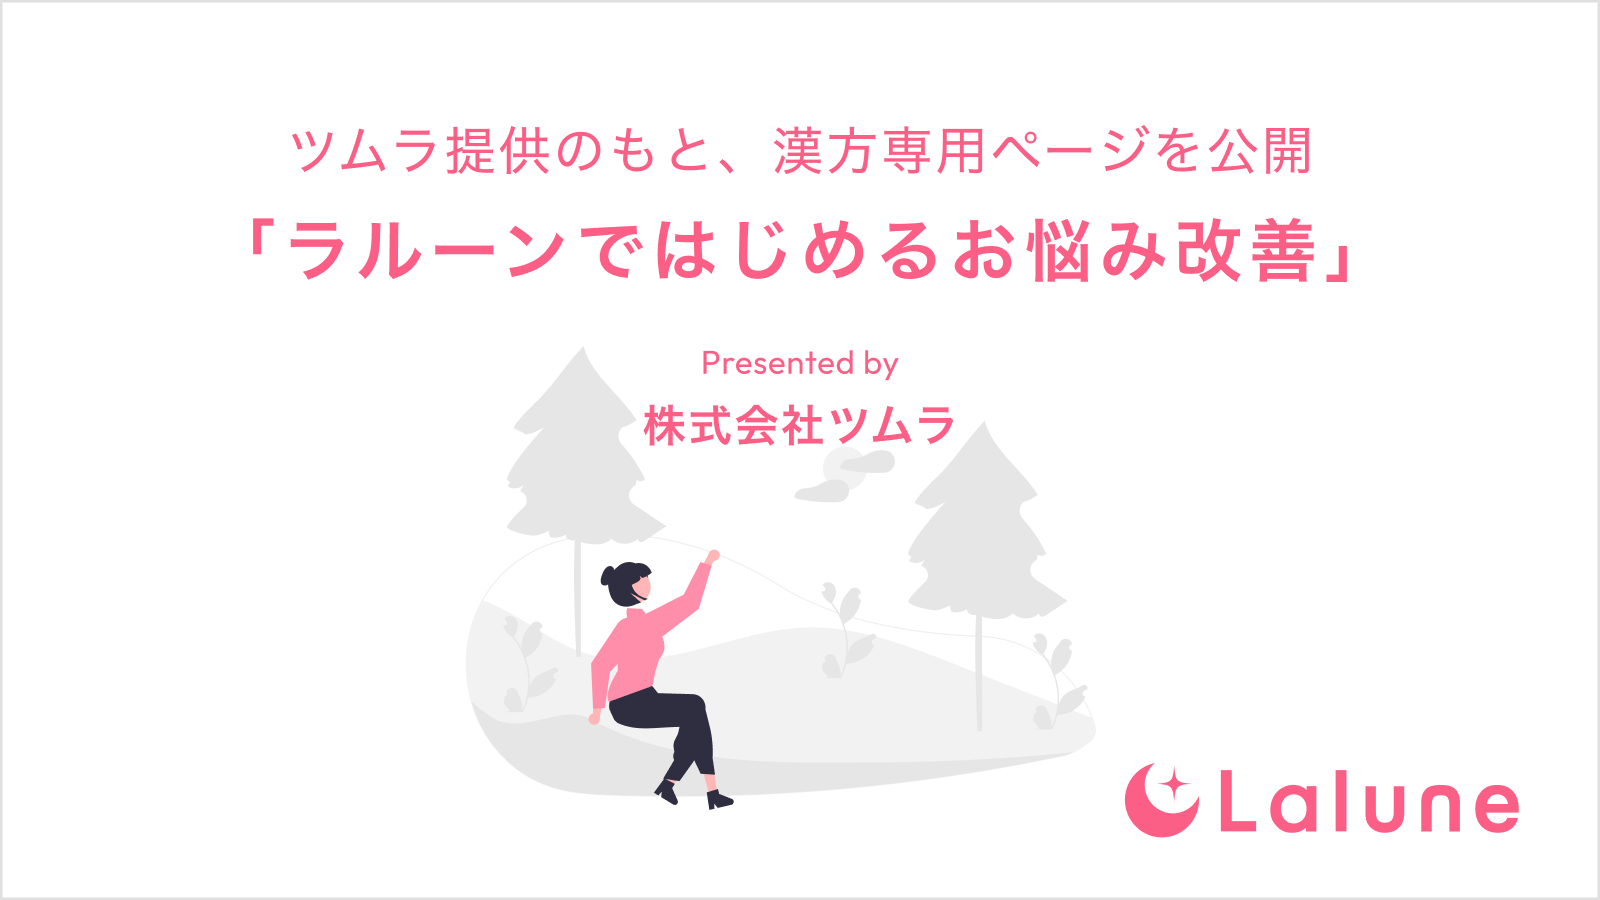 生理日・排卵日予測アプリ『ラルーン』 ツムラ提供のもと、漢方専用